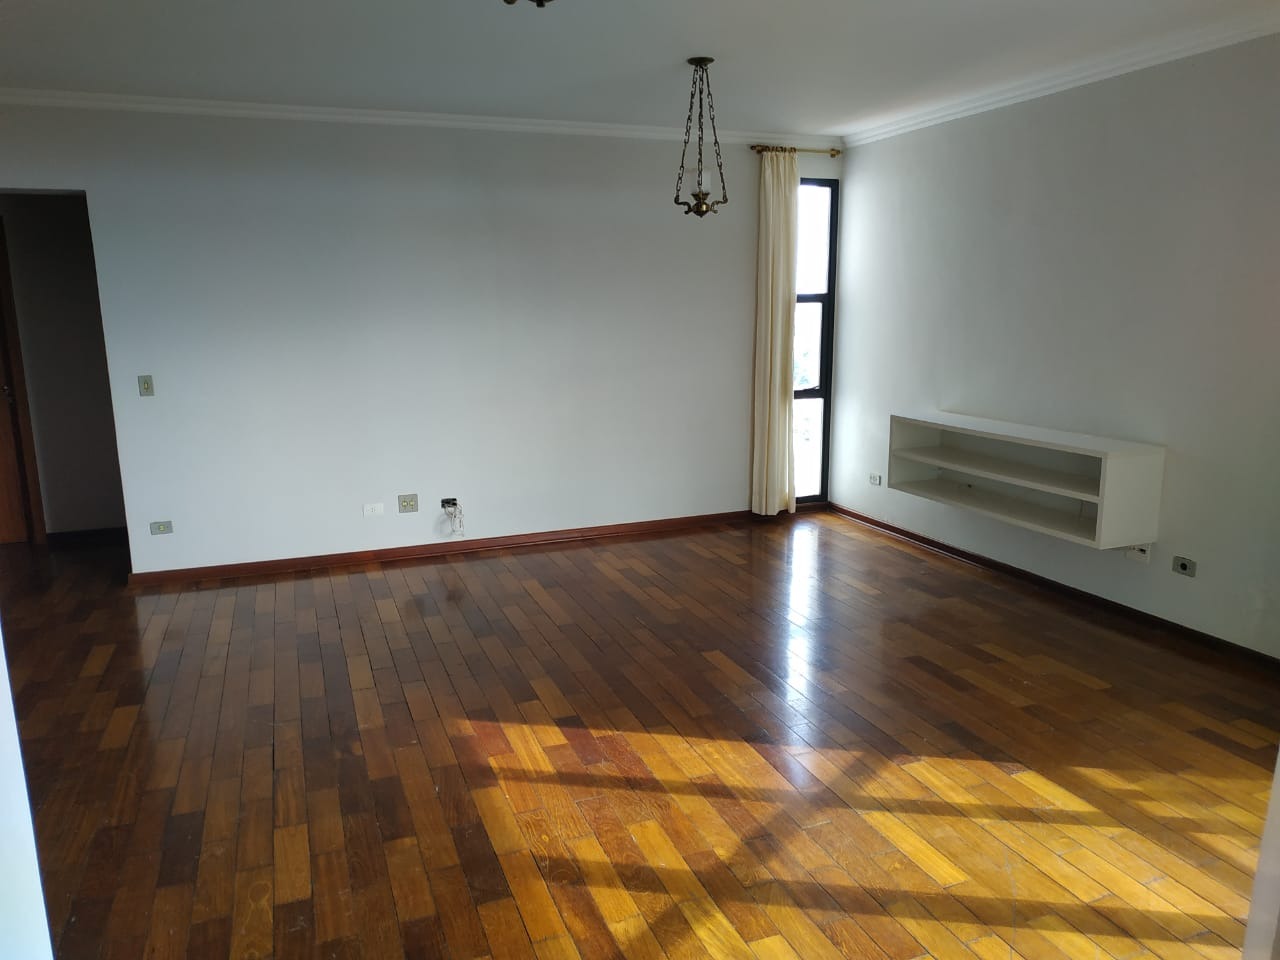 Apartamento para alugar, 4 quartos, 1 suíte, 2 vagas, no bairro Centro em Rio das Pedras - SP